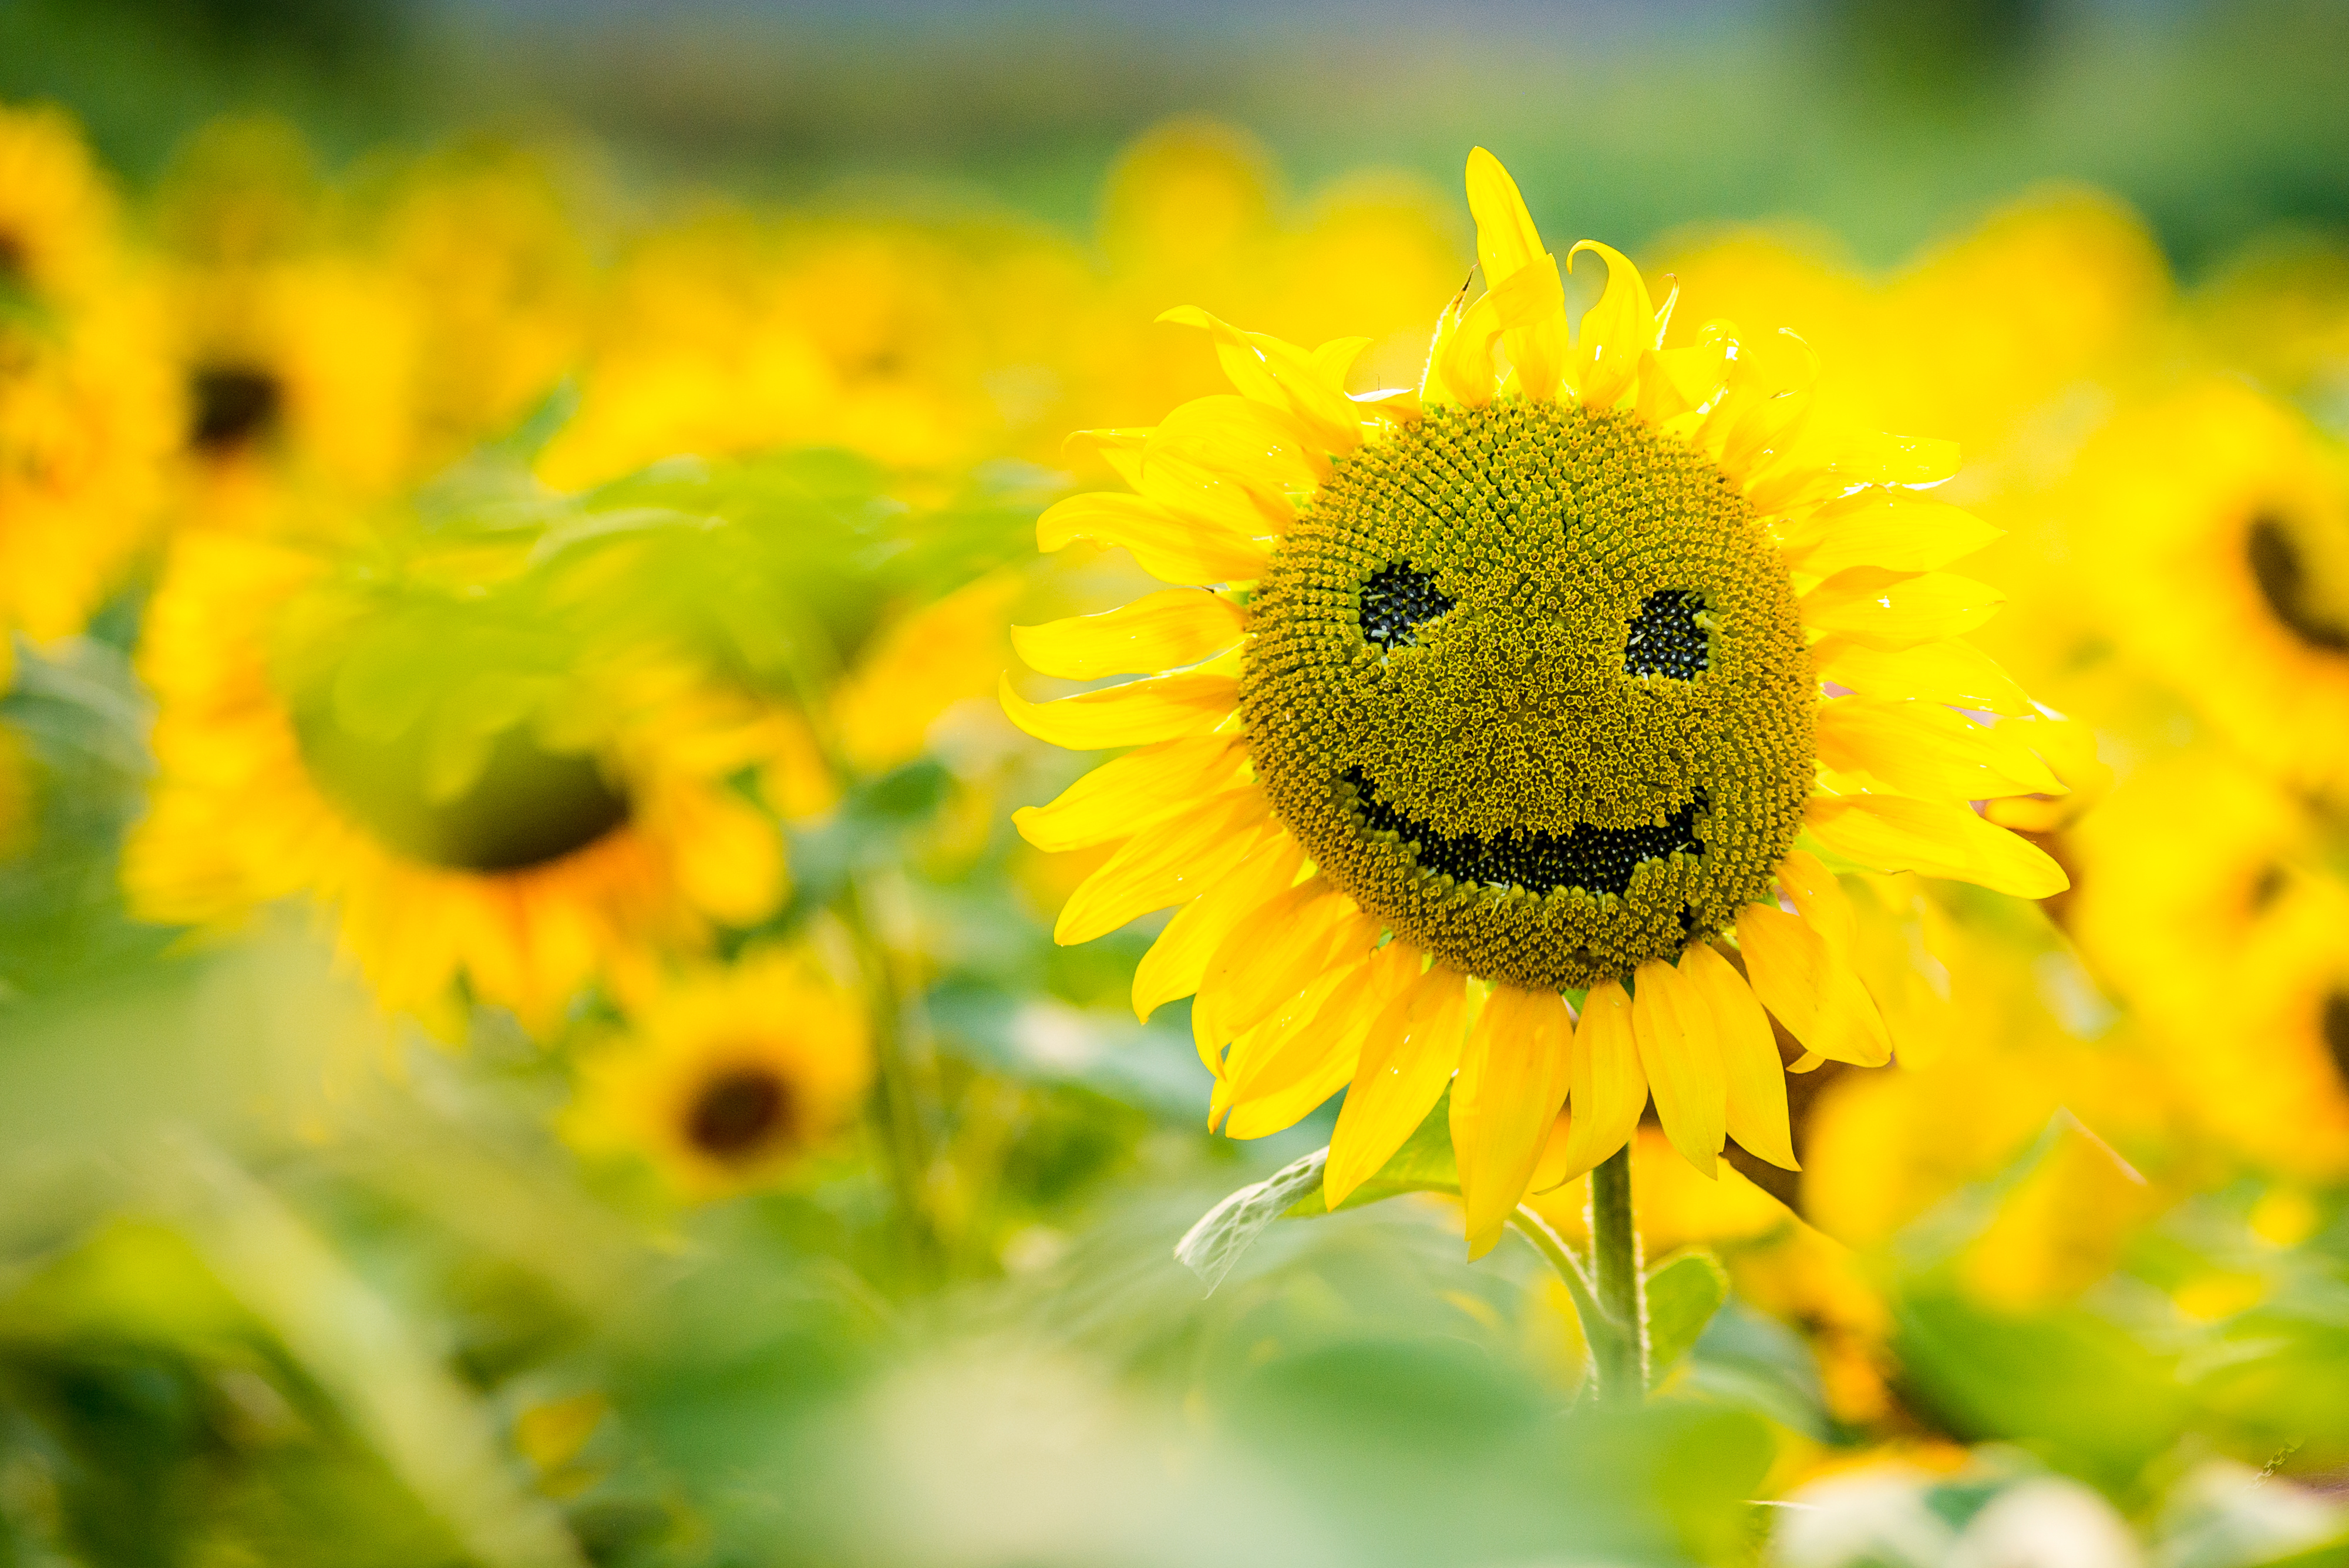 Smile, Sunflower.